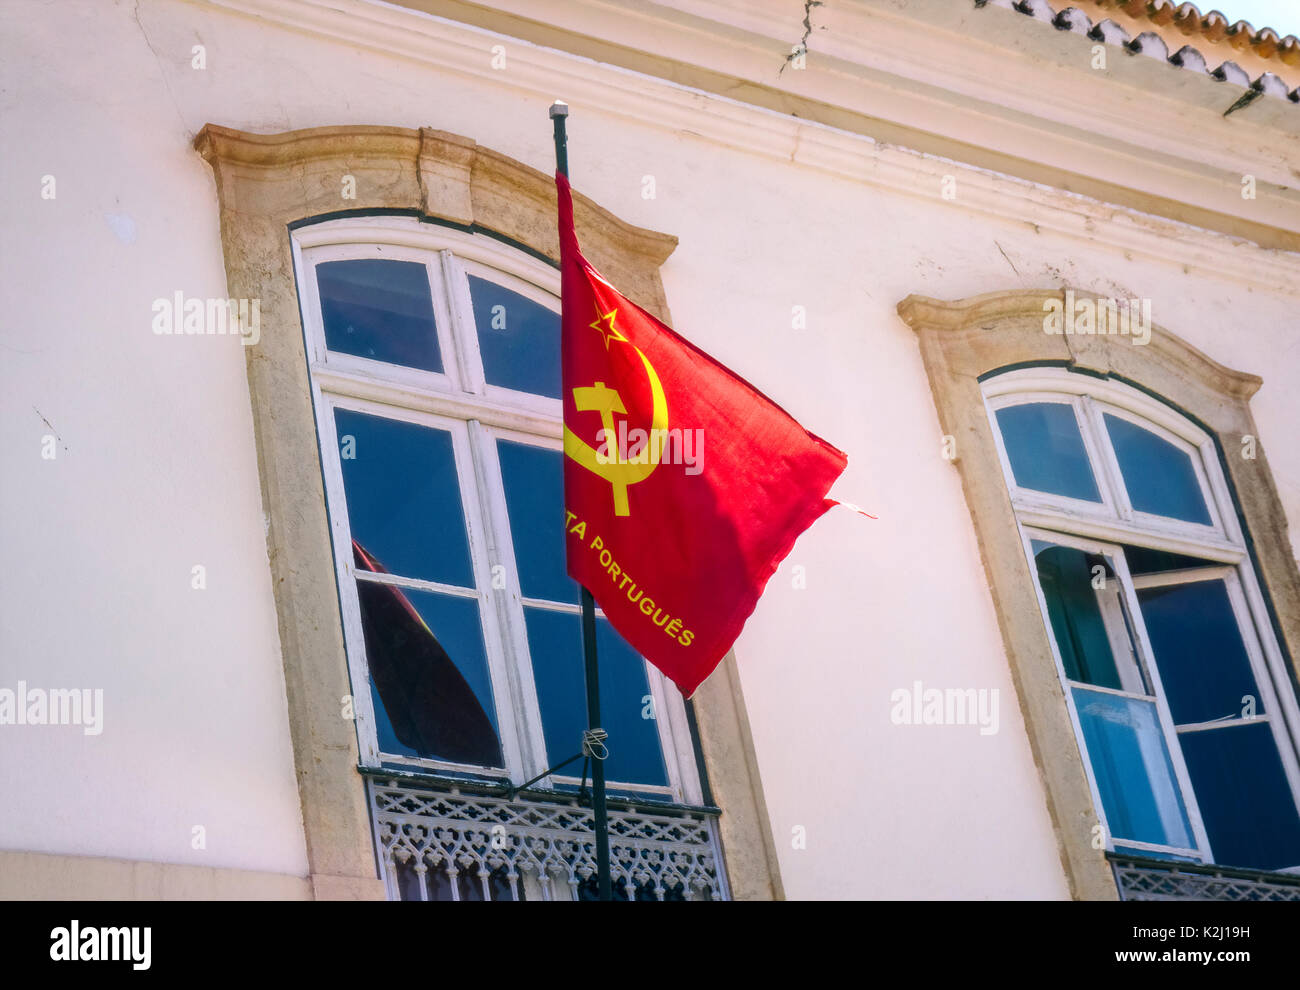 Flag of the Portuguese Communist Party (Partido Comunista Português) on a building in Faro, Portugal. Stock Photo